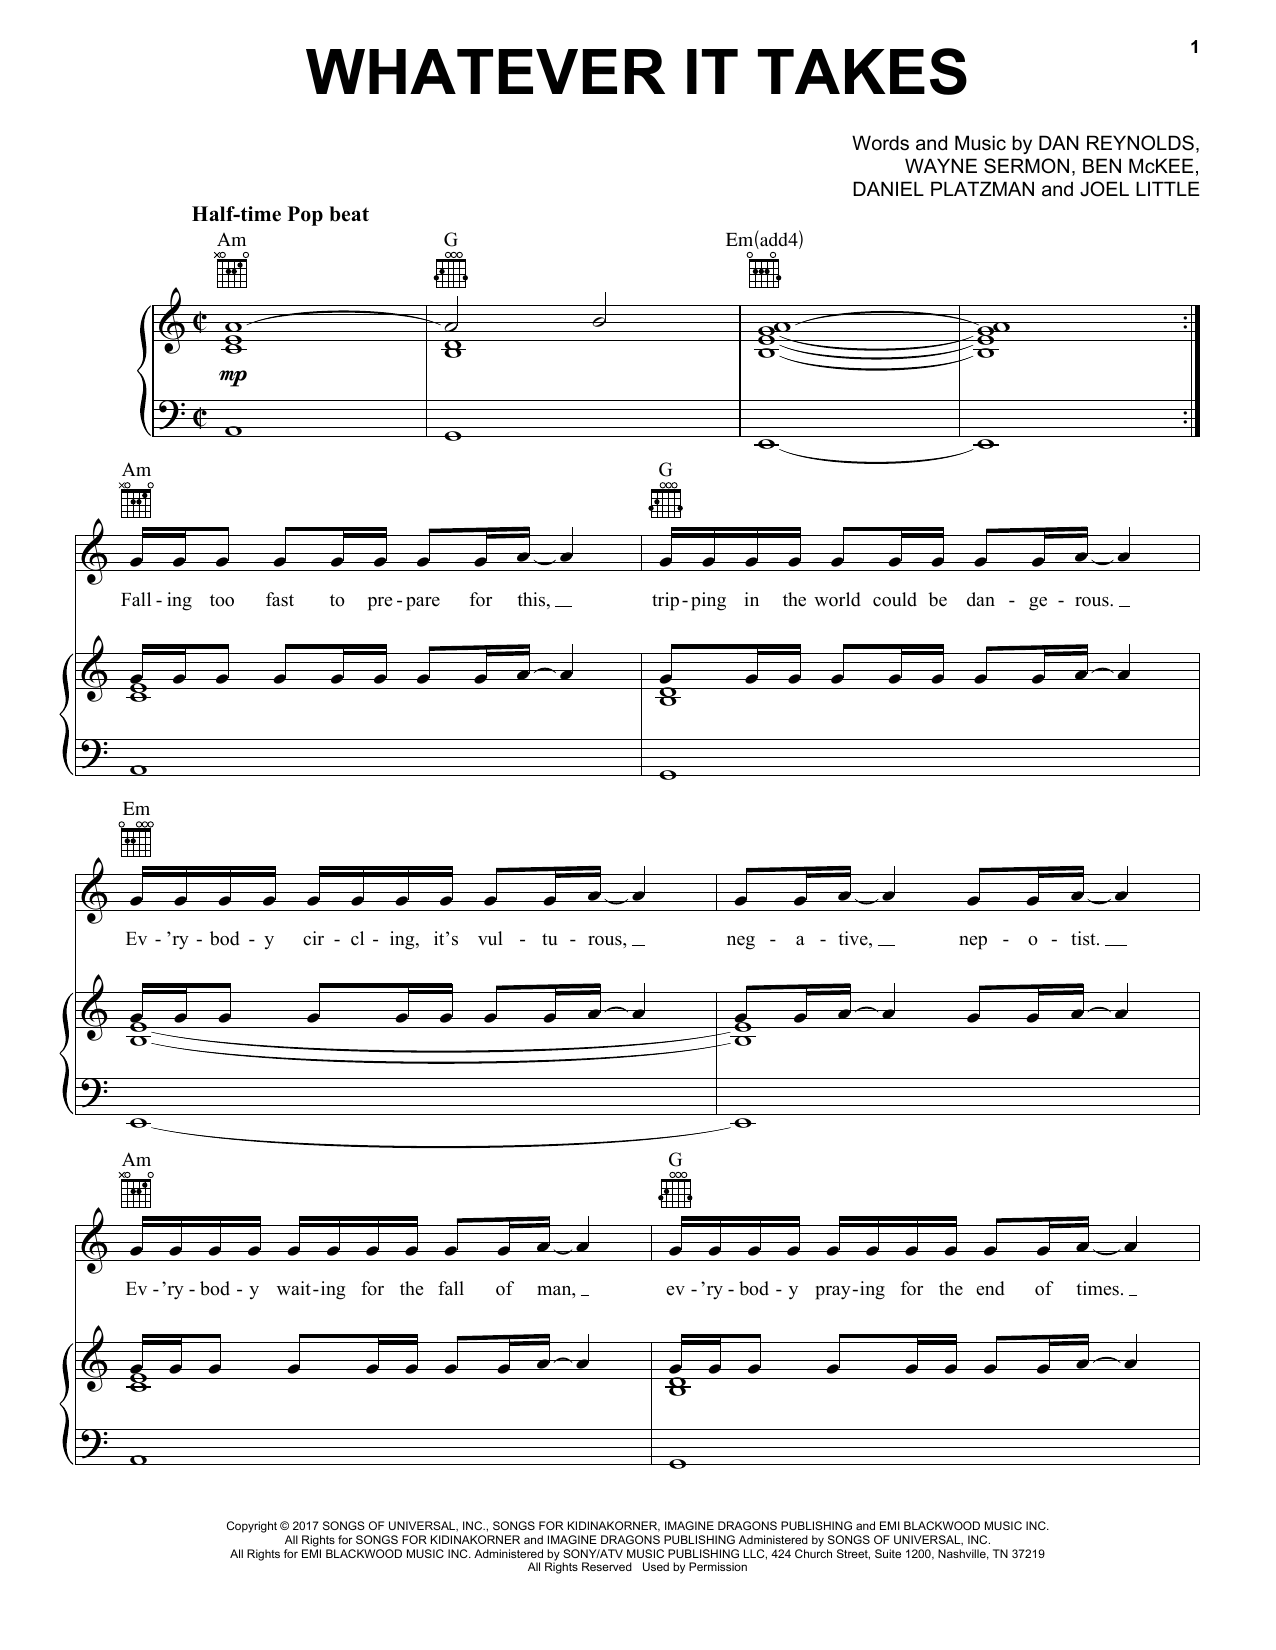 Imagine Dragons Whatever It Takes sheet music notes and chords arranged for Ukulele Chords/Lyrics